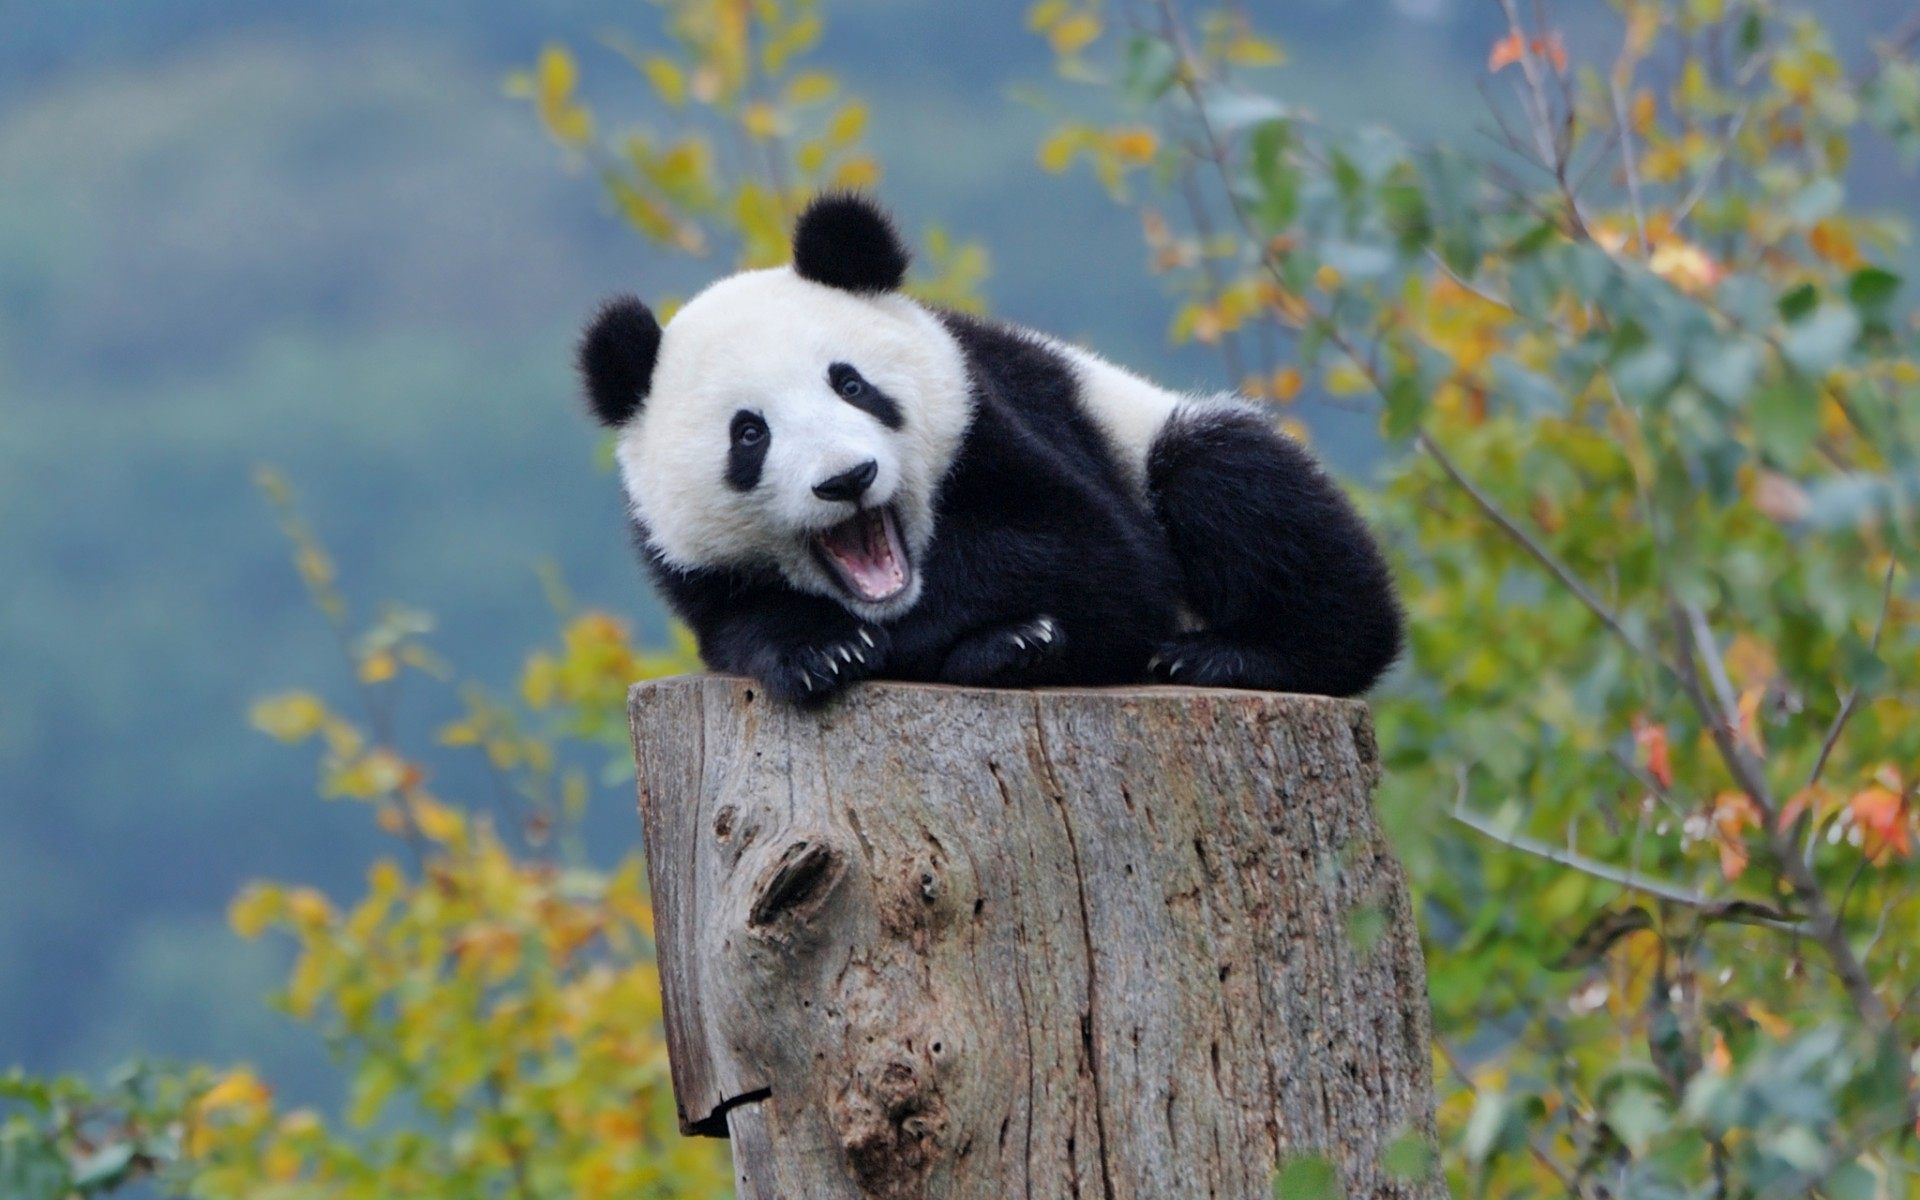 Baby Panda Cute Wallpaper For Desktop, Laptop & Mobile